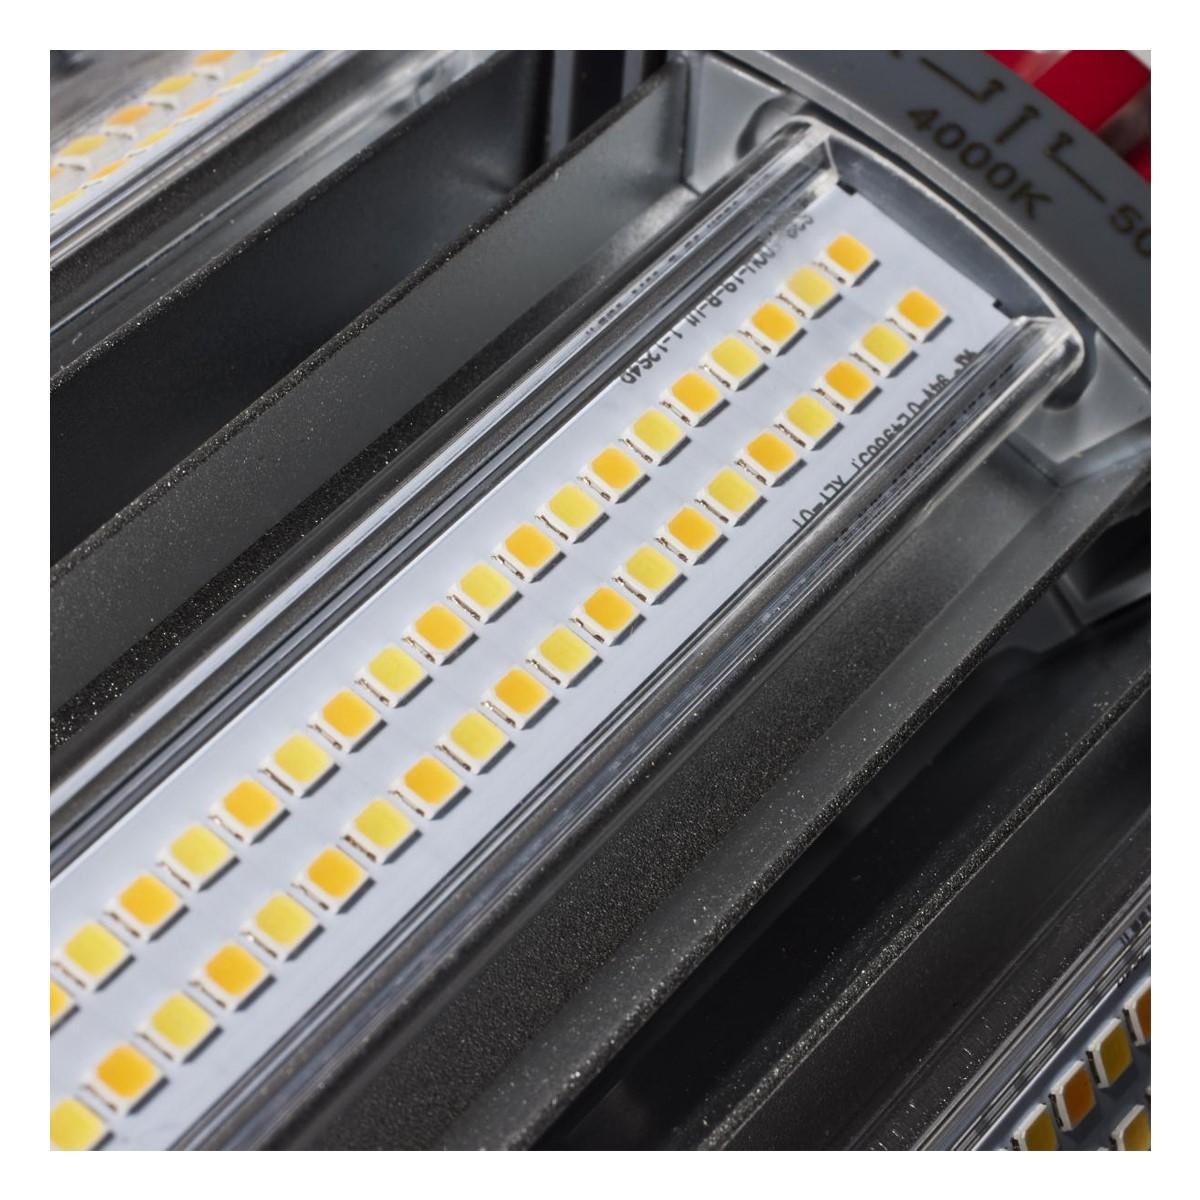 Hi-Pro Retrofit LED Corn Bulb, 100W, 14000 Lumens, Selectable CCT, 30K/40K/50K, EX39 Mogul Extended Base, 120-277V